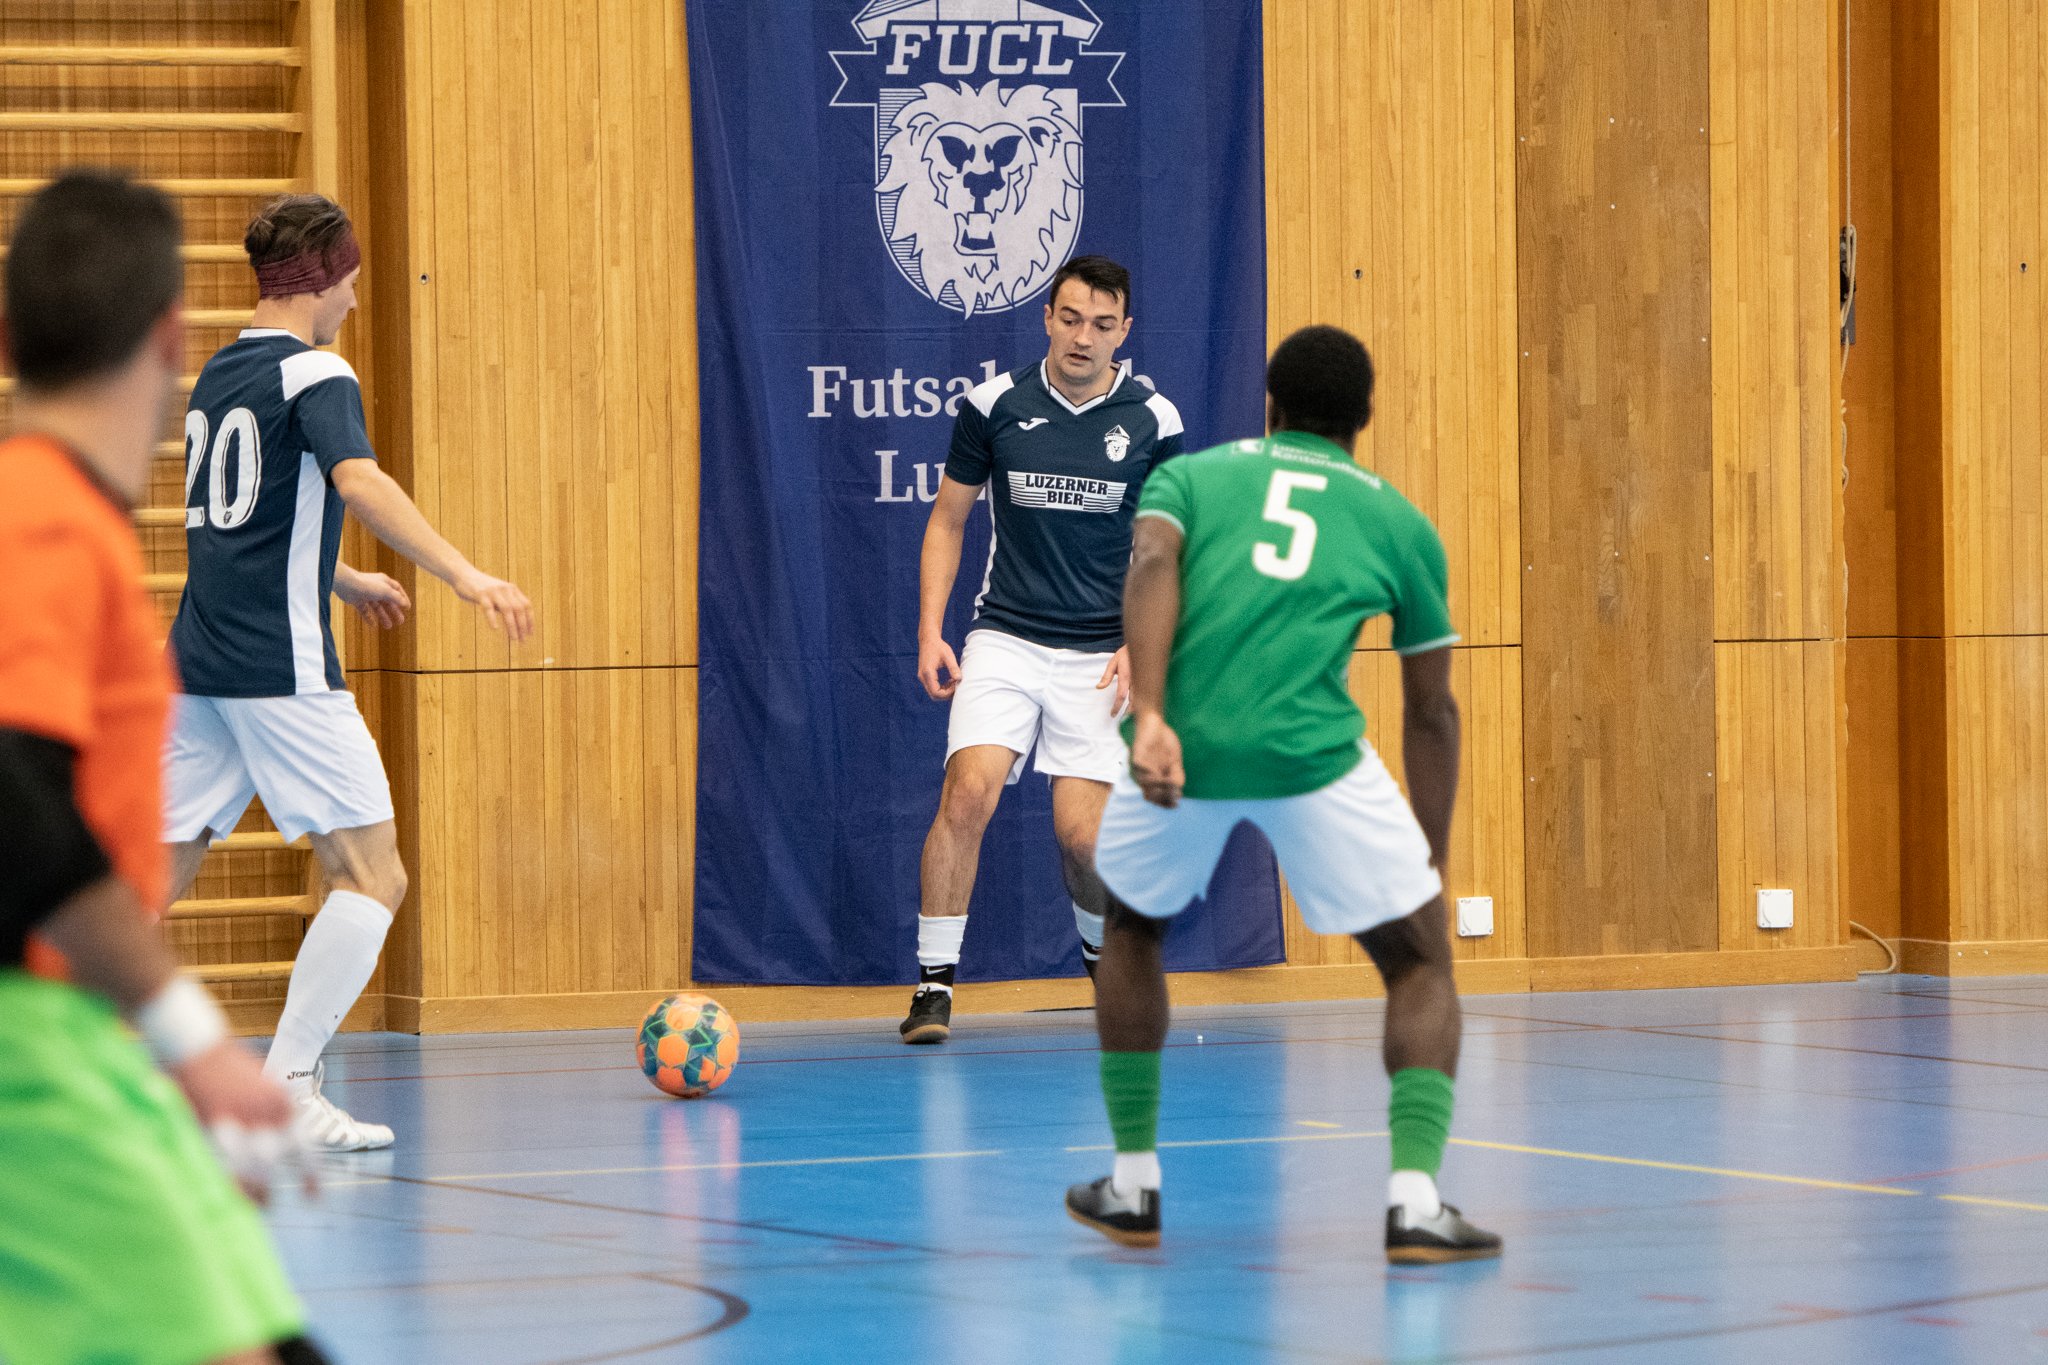 Futsal-Club-Luzern-Kriens-014.jpg